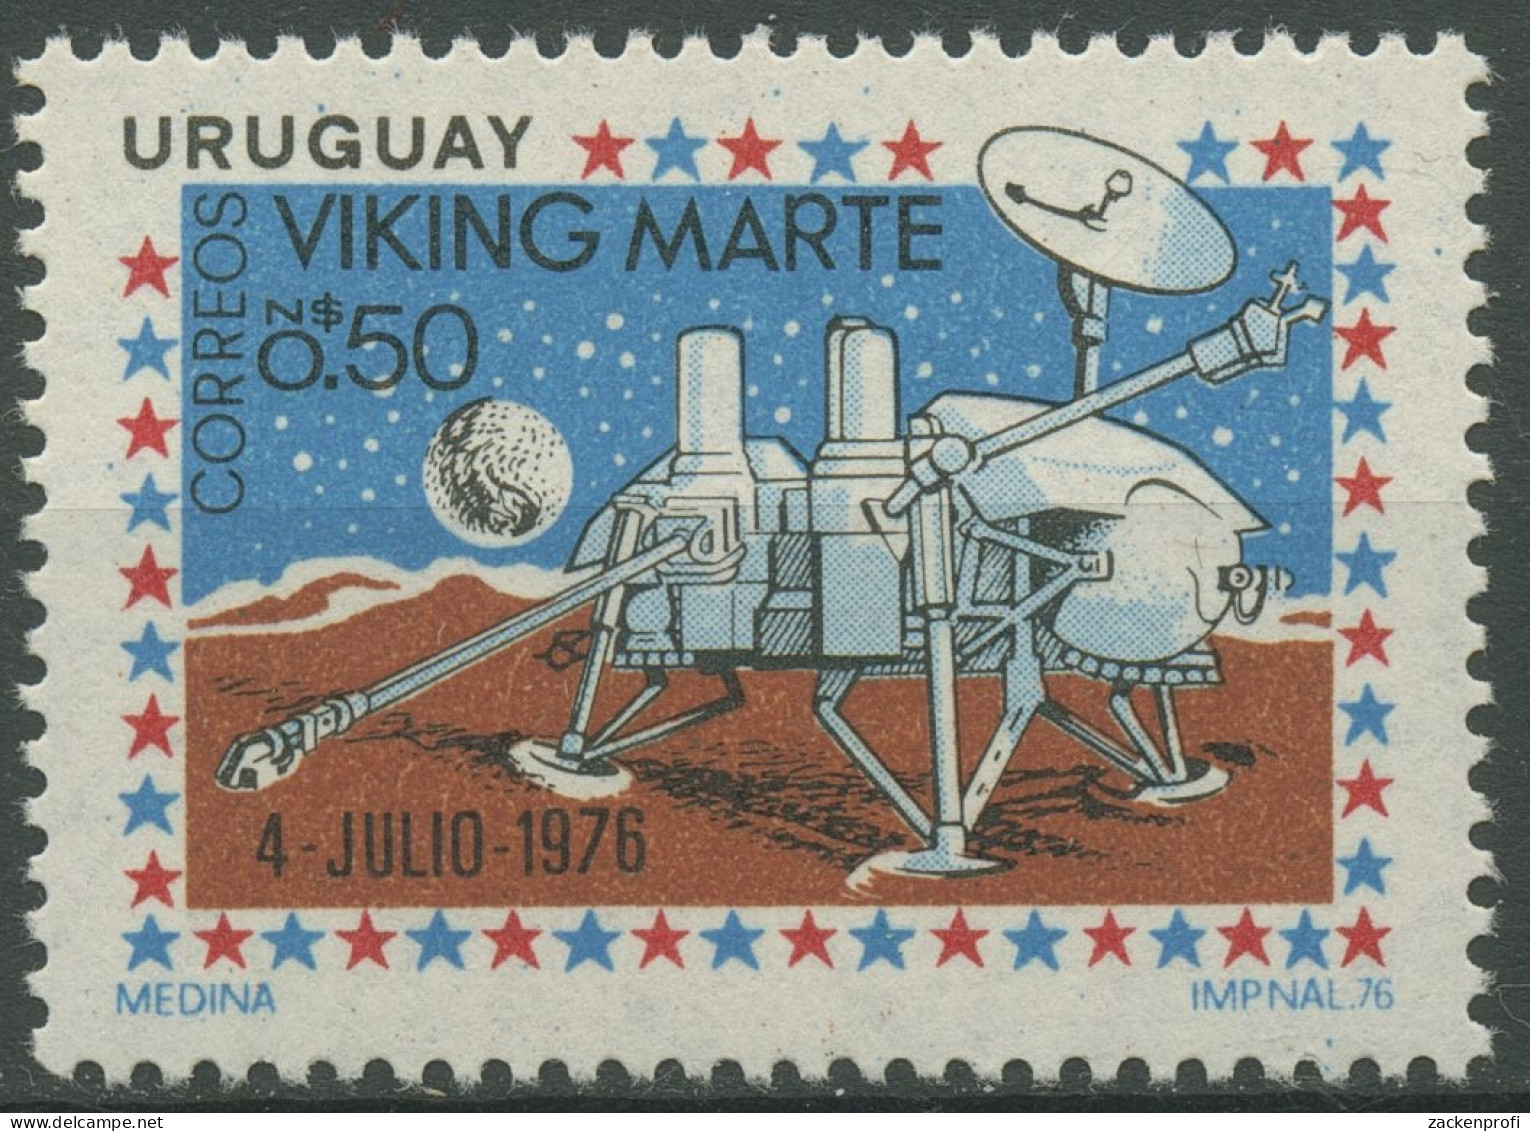 Uruguay 1976 Jahresereignisse Marssonde Viking 1434 Postfrisch - Uruguay